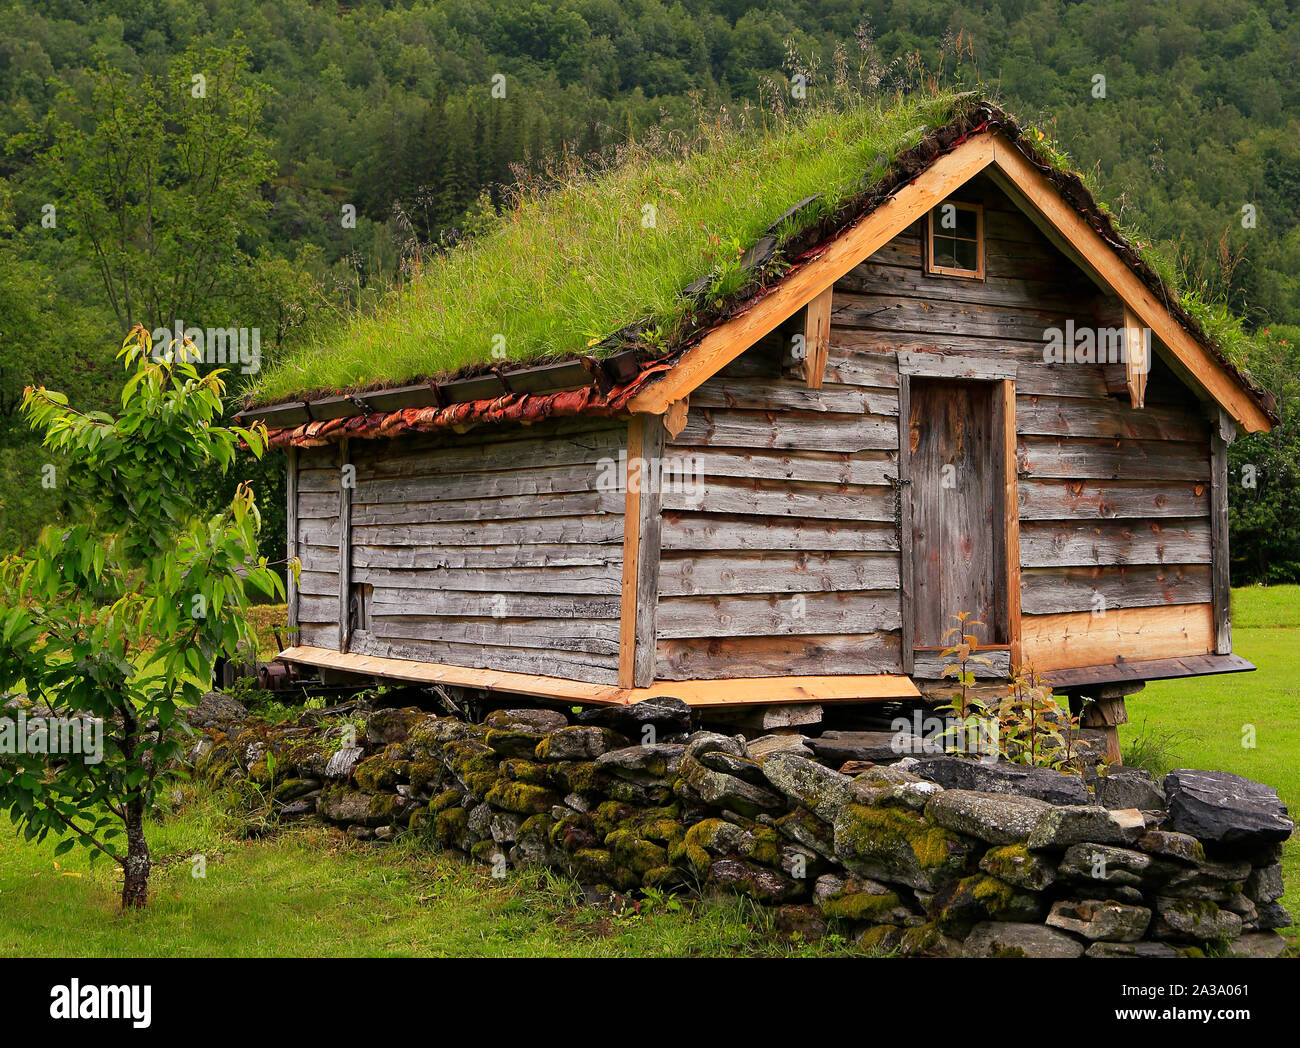 Norwegische Hütte mit grünem Gras auf dem Dach, Norwegen Stockfoto